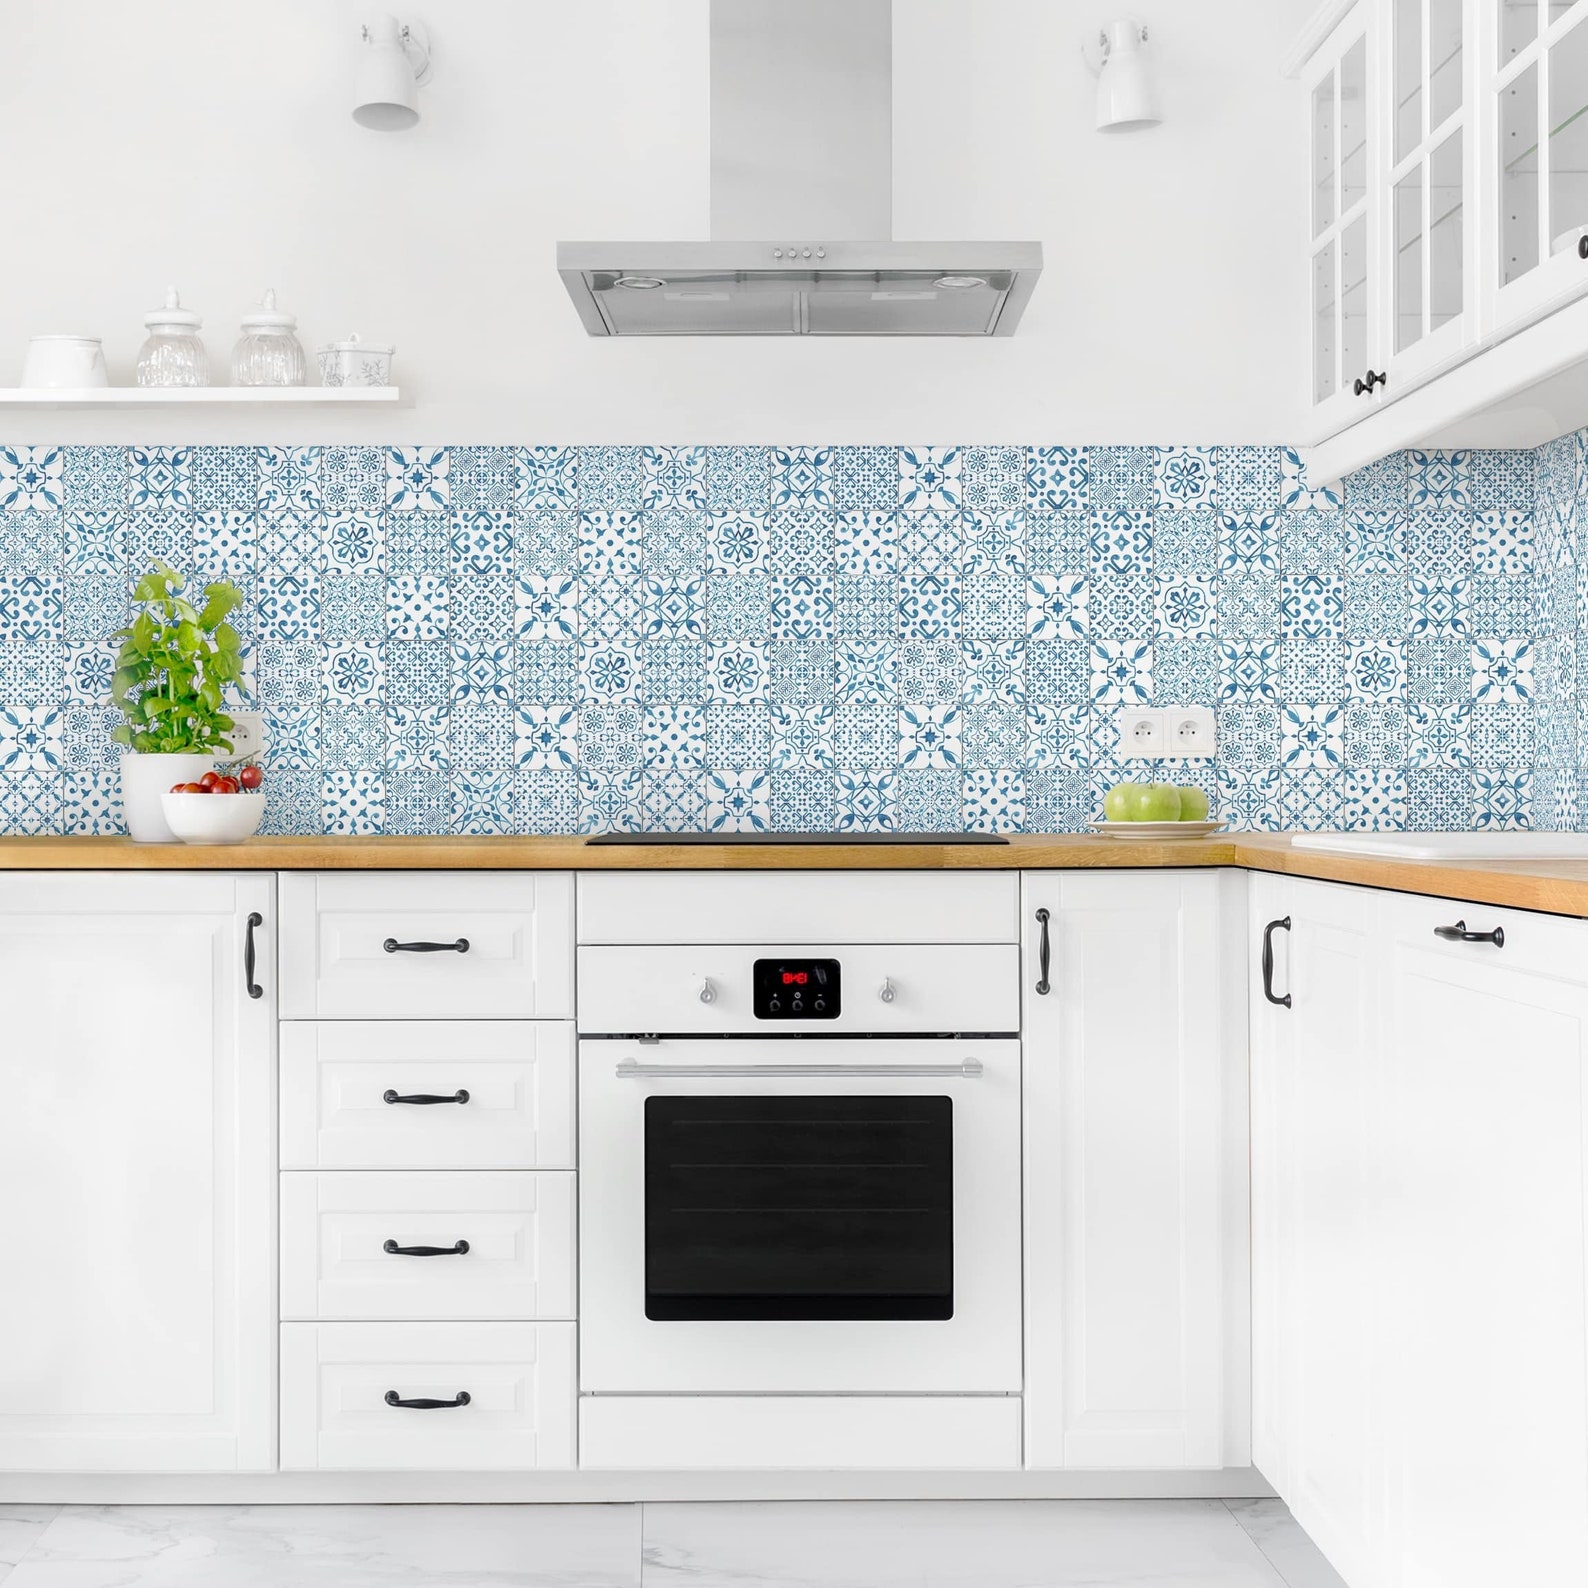 Self-adhesive splashback Pattern Tiles Blue White kitchen | Etsy